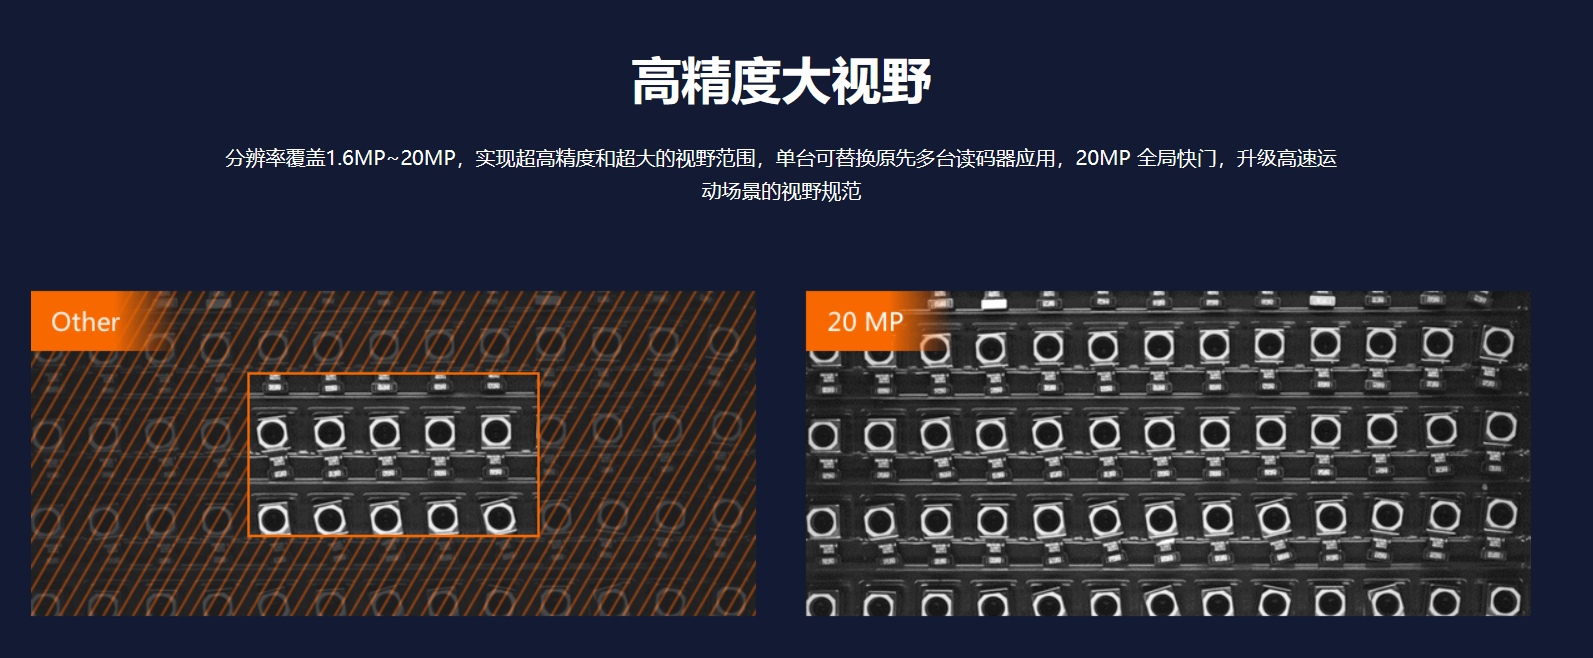 智能读码丨海康ID5000系列MV-ID5050M 420 万像素全局快门智能读码器-捷利得(北京)自动化科技有限公司